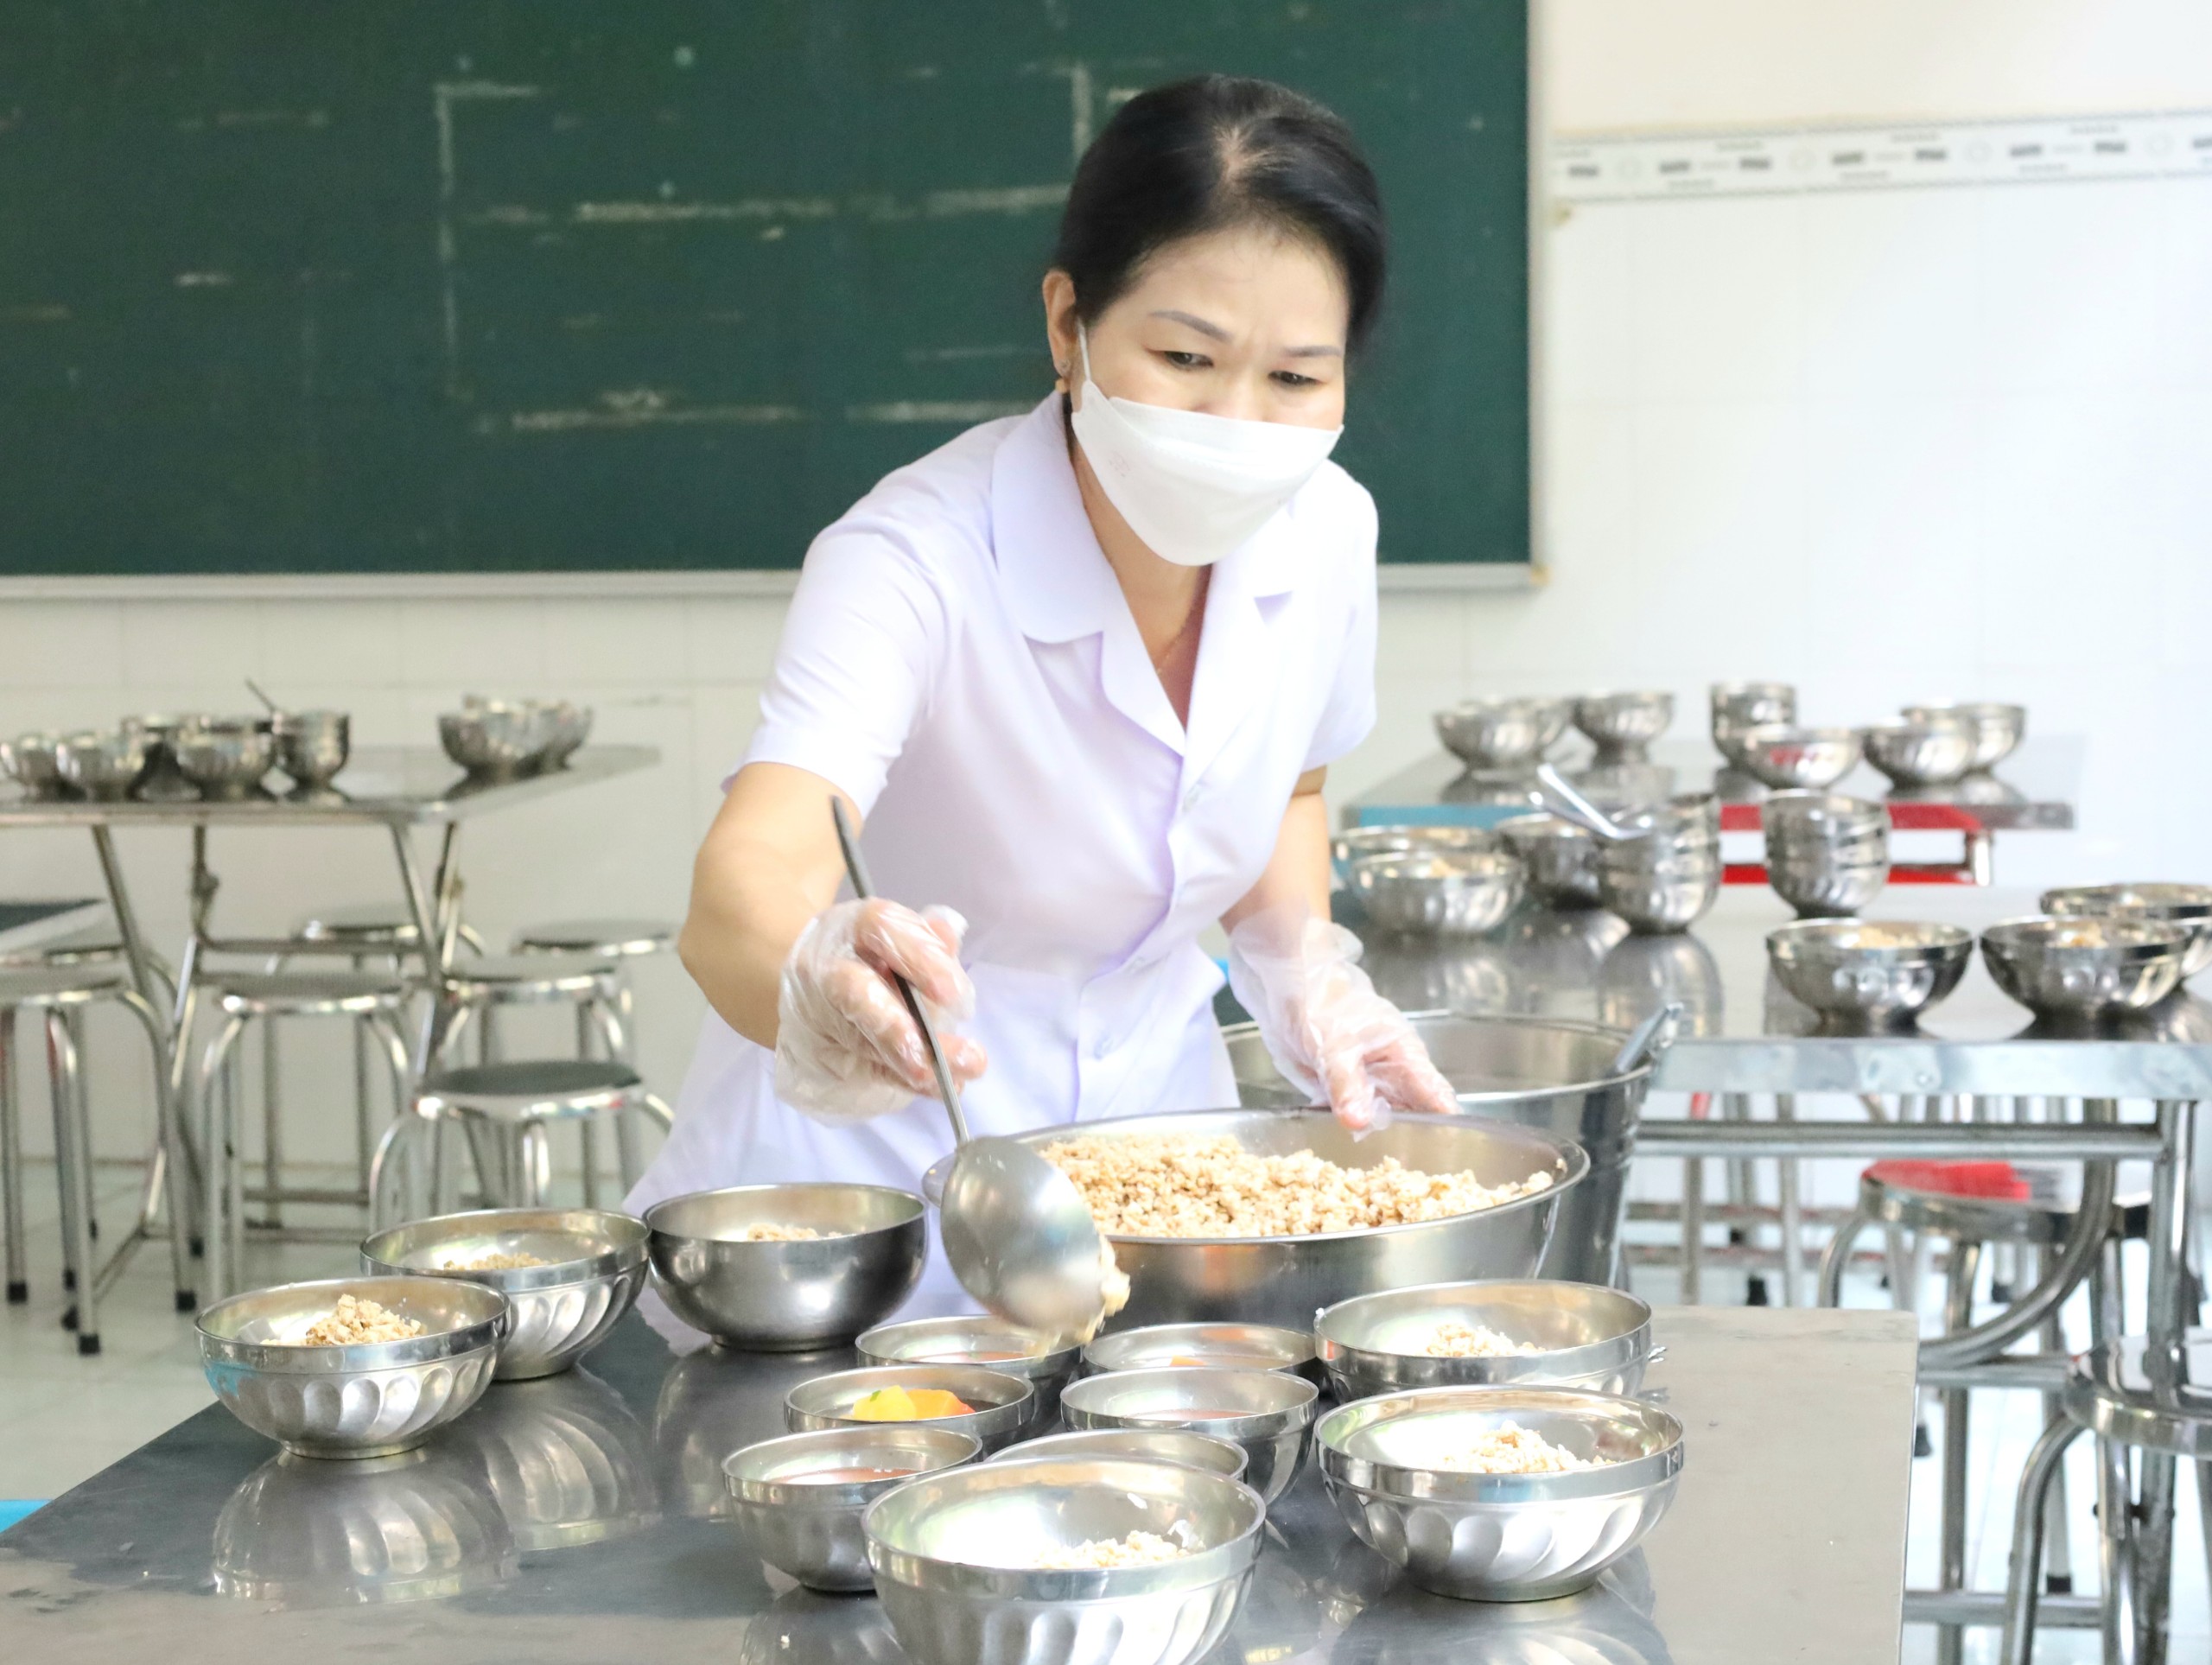 Trường Tiểu học Ngô Quyền, quận Ninh Kiều xây dựng thực đơn theo tuần đảm bảo cân bằn dinh dưỡng, giúp các em phát triển thể lực và thể chất một cách phù hợp.